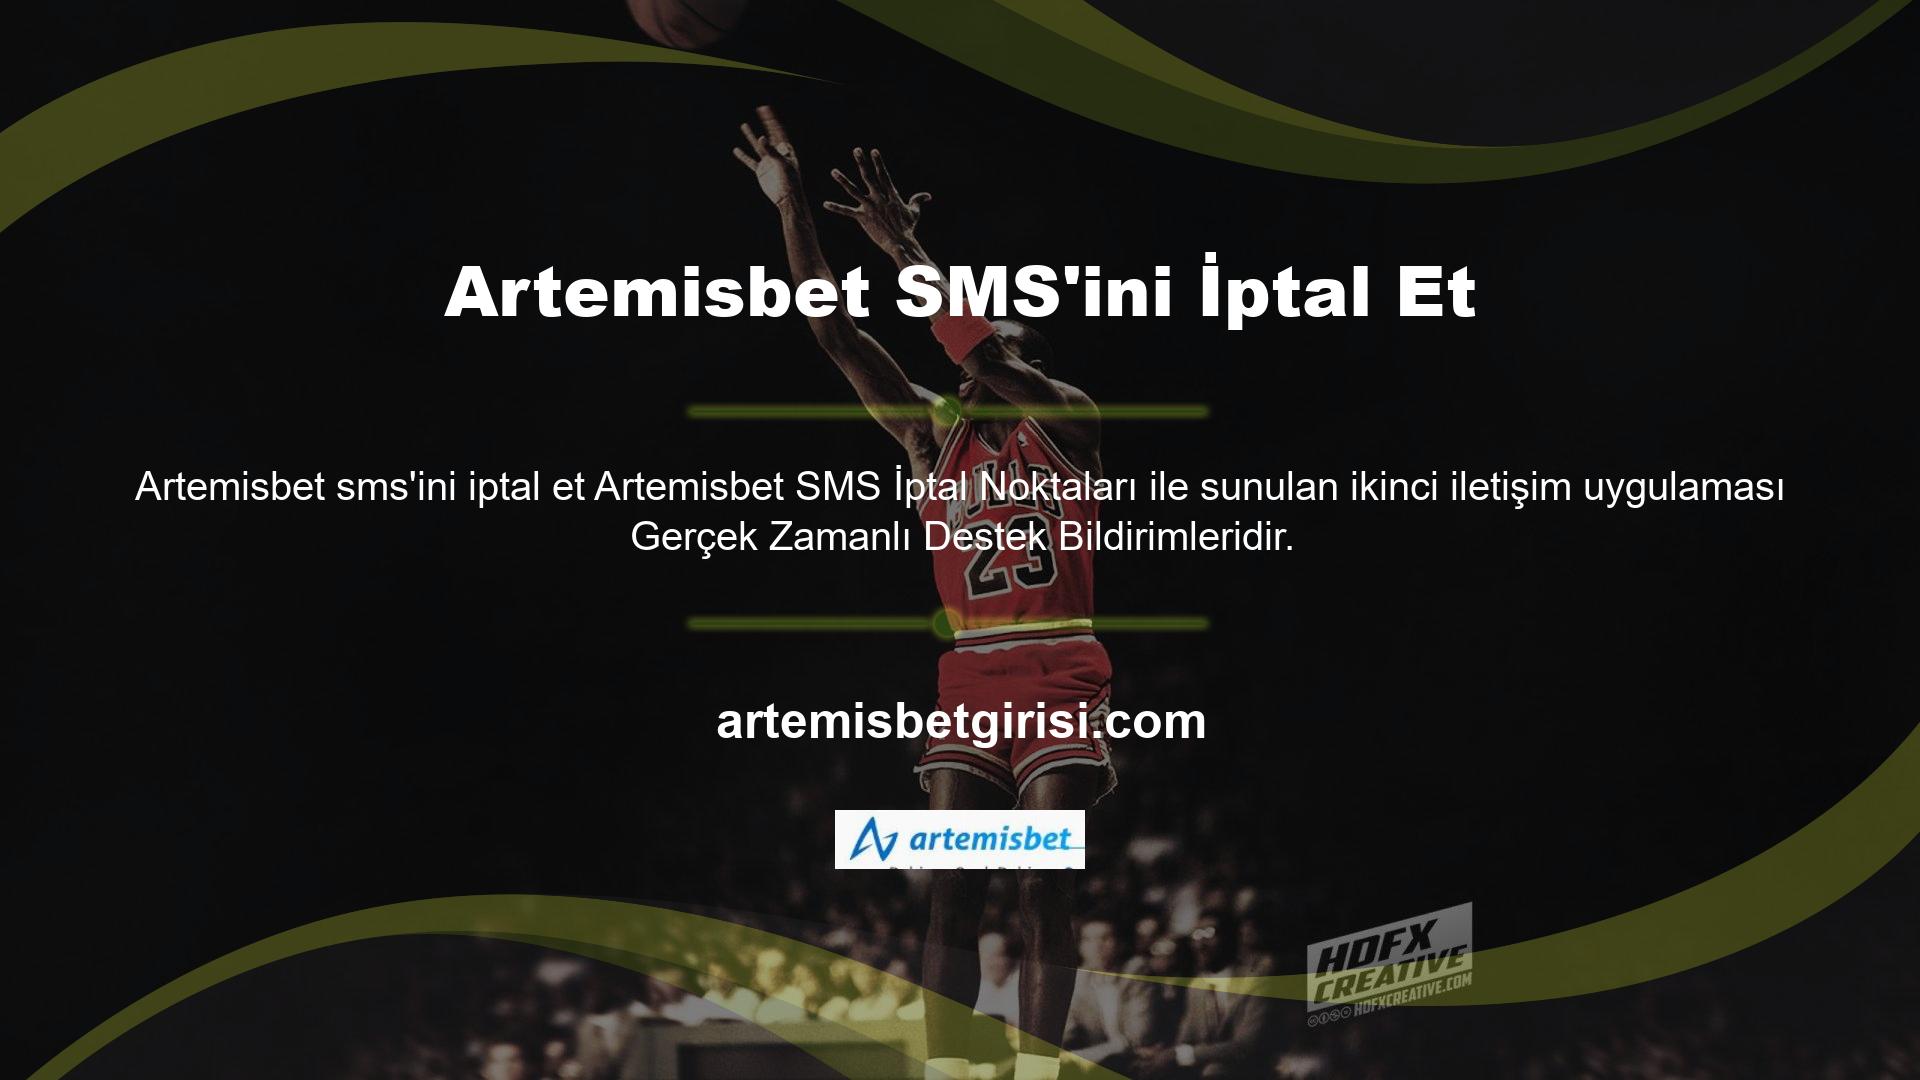 Artemisbet gerçek zamanlı destek hattı, anlık mesajlaşma teknolojisi şeklinde çevrimiçi hizmetler sunmaktadır